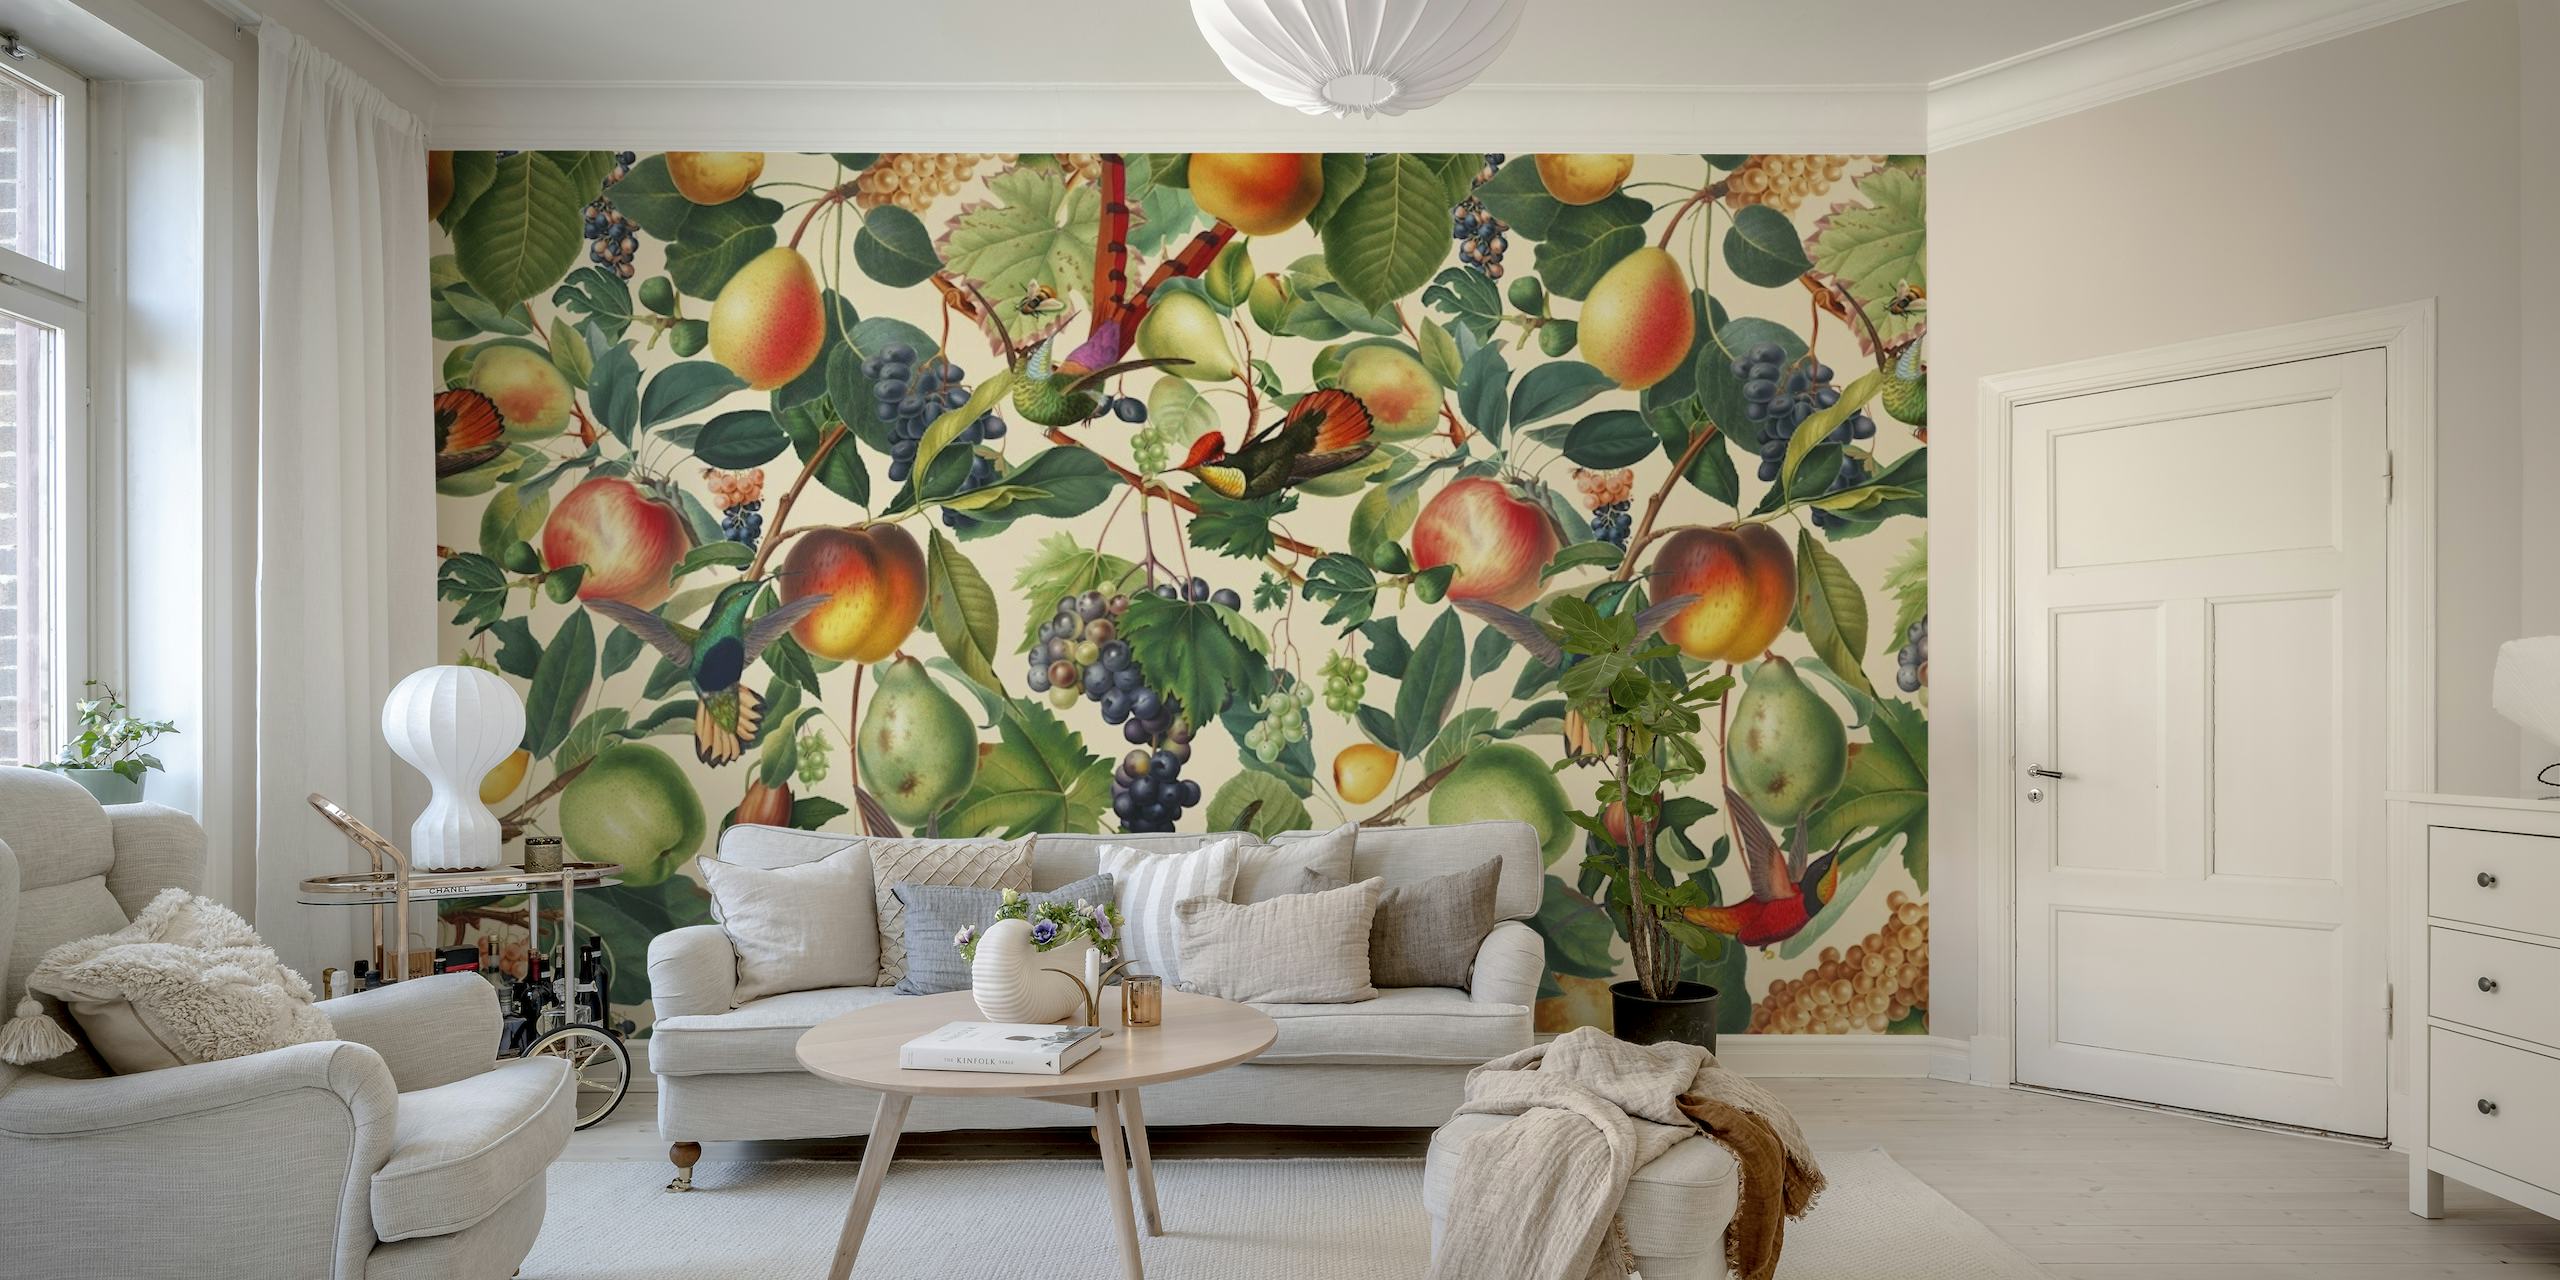 Mural de pared con temática veraniega con una variedad de frutas como melocotones y uvas en medio de un patrón de hojas verdes